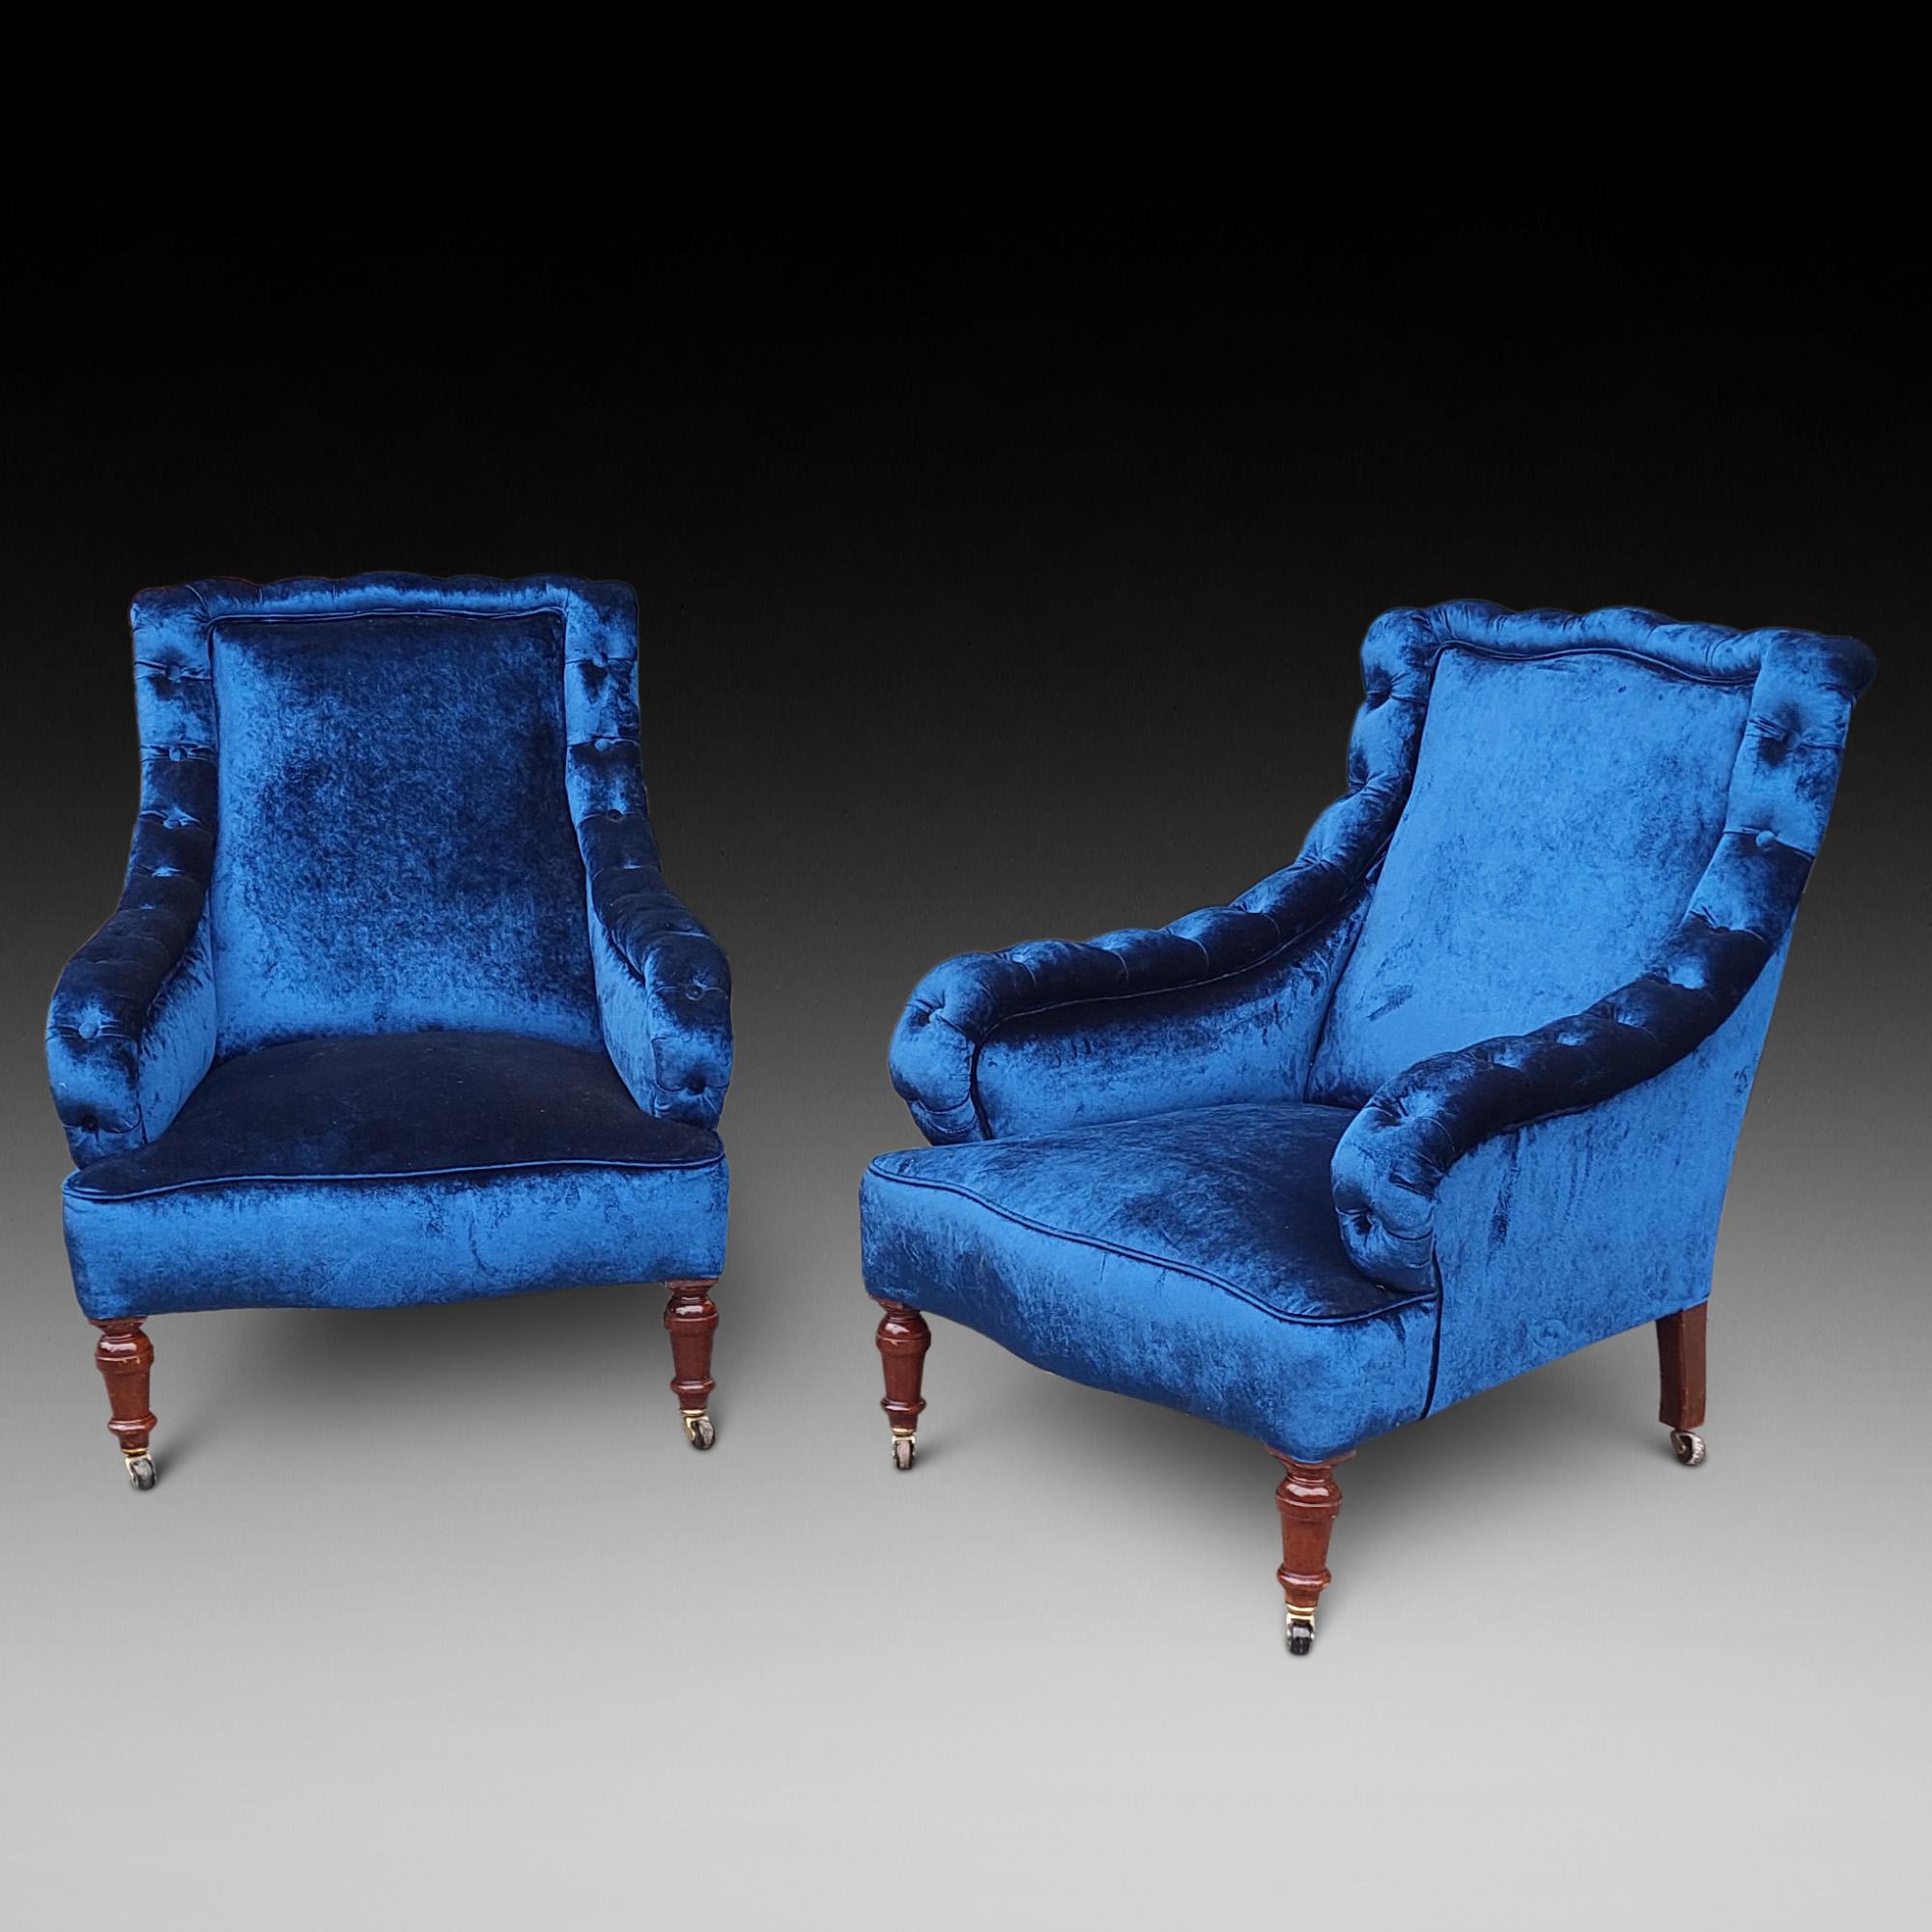 Paire de fauteuils victoriens en acajou, tapissés de velours bleu foncé, avec accoudoirs boutonnés, pieds avant tournés et pieds arrière en sabre avec roulettes 29 